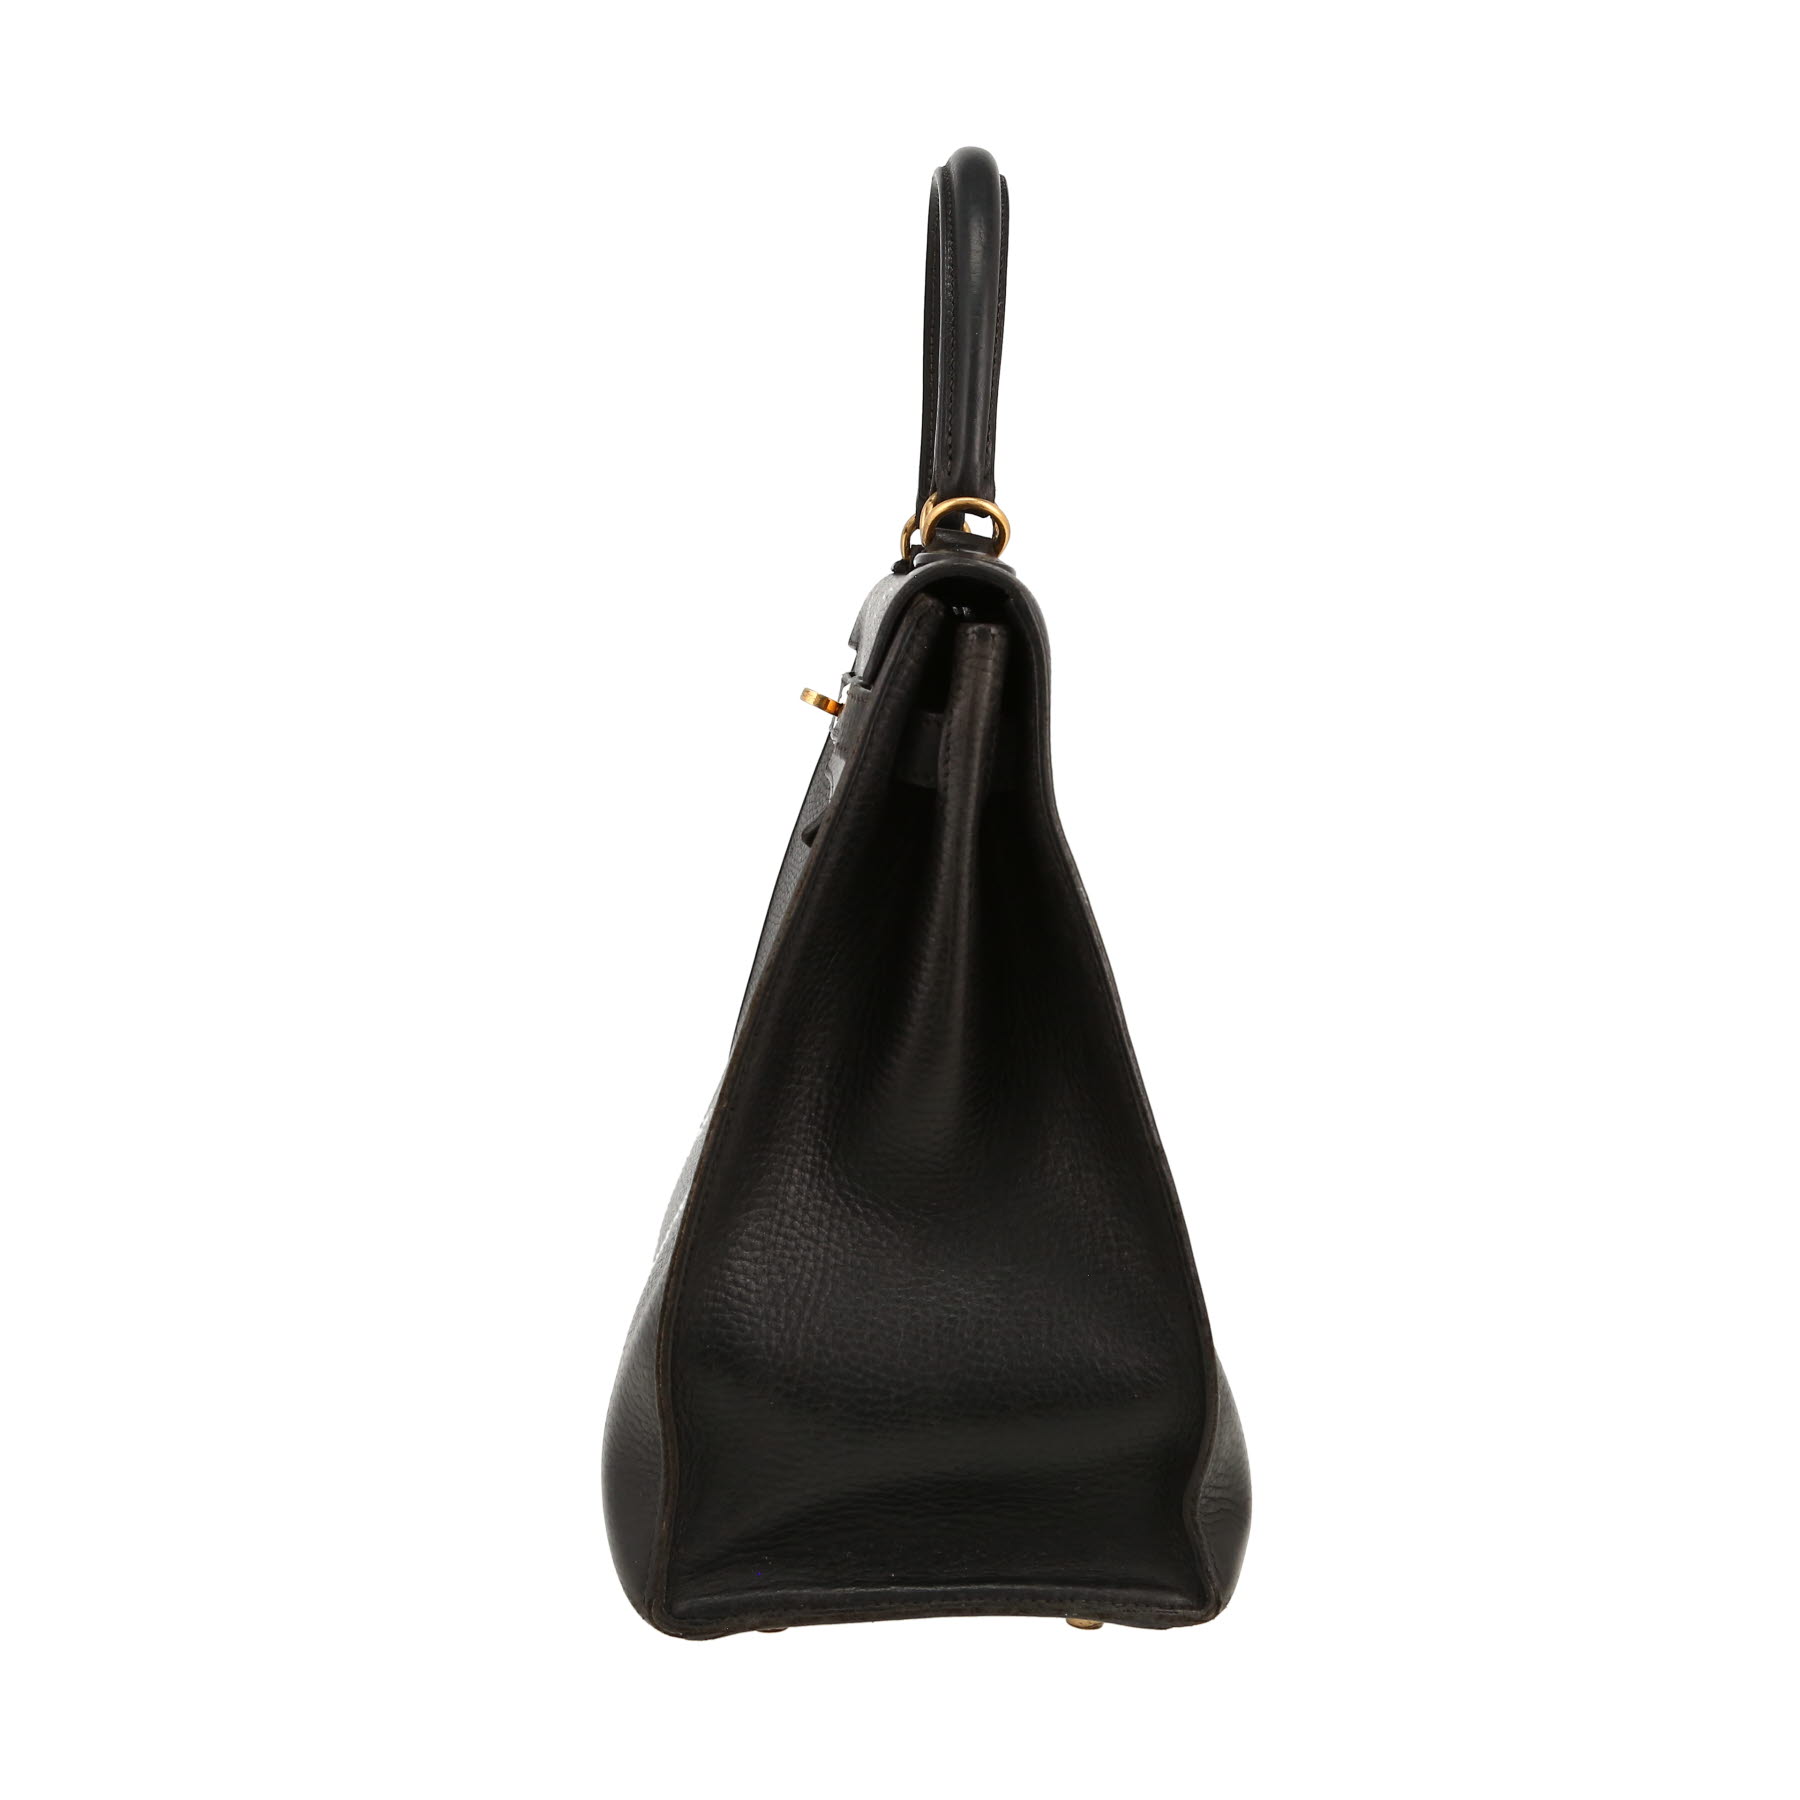 Kelly 35 cm Handbag In Black Ardenne Leather